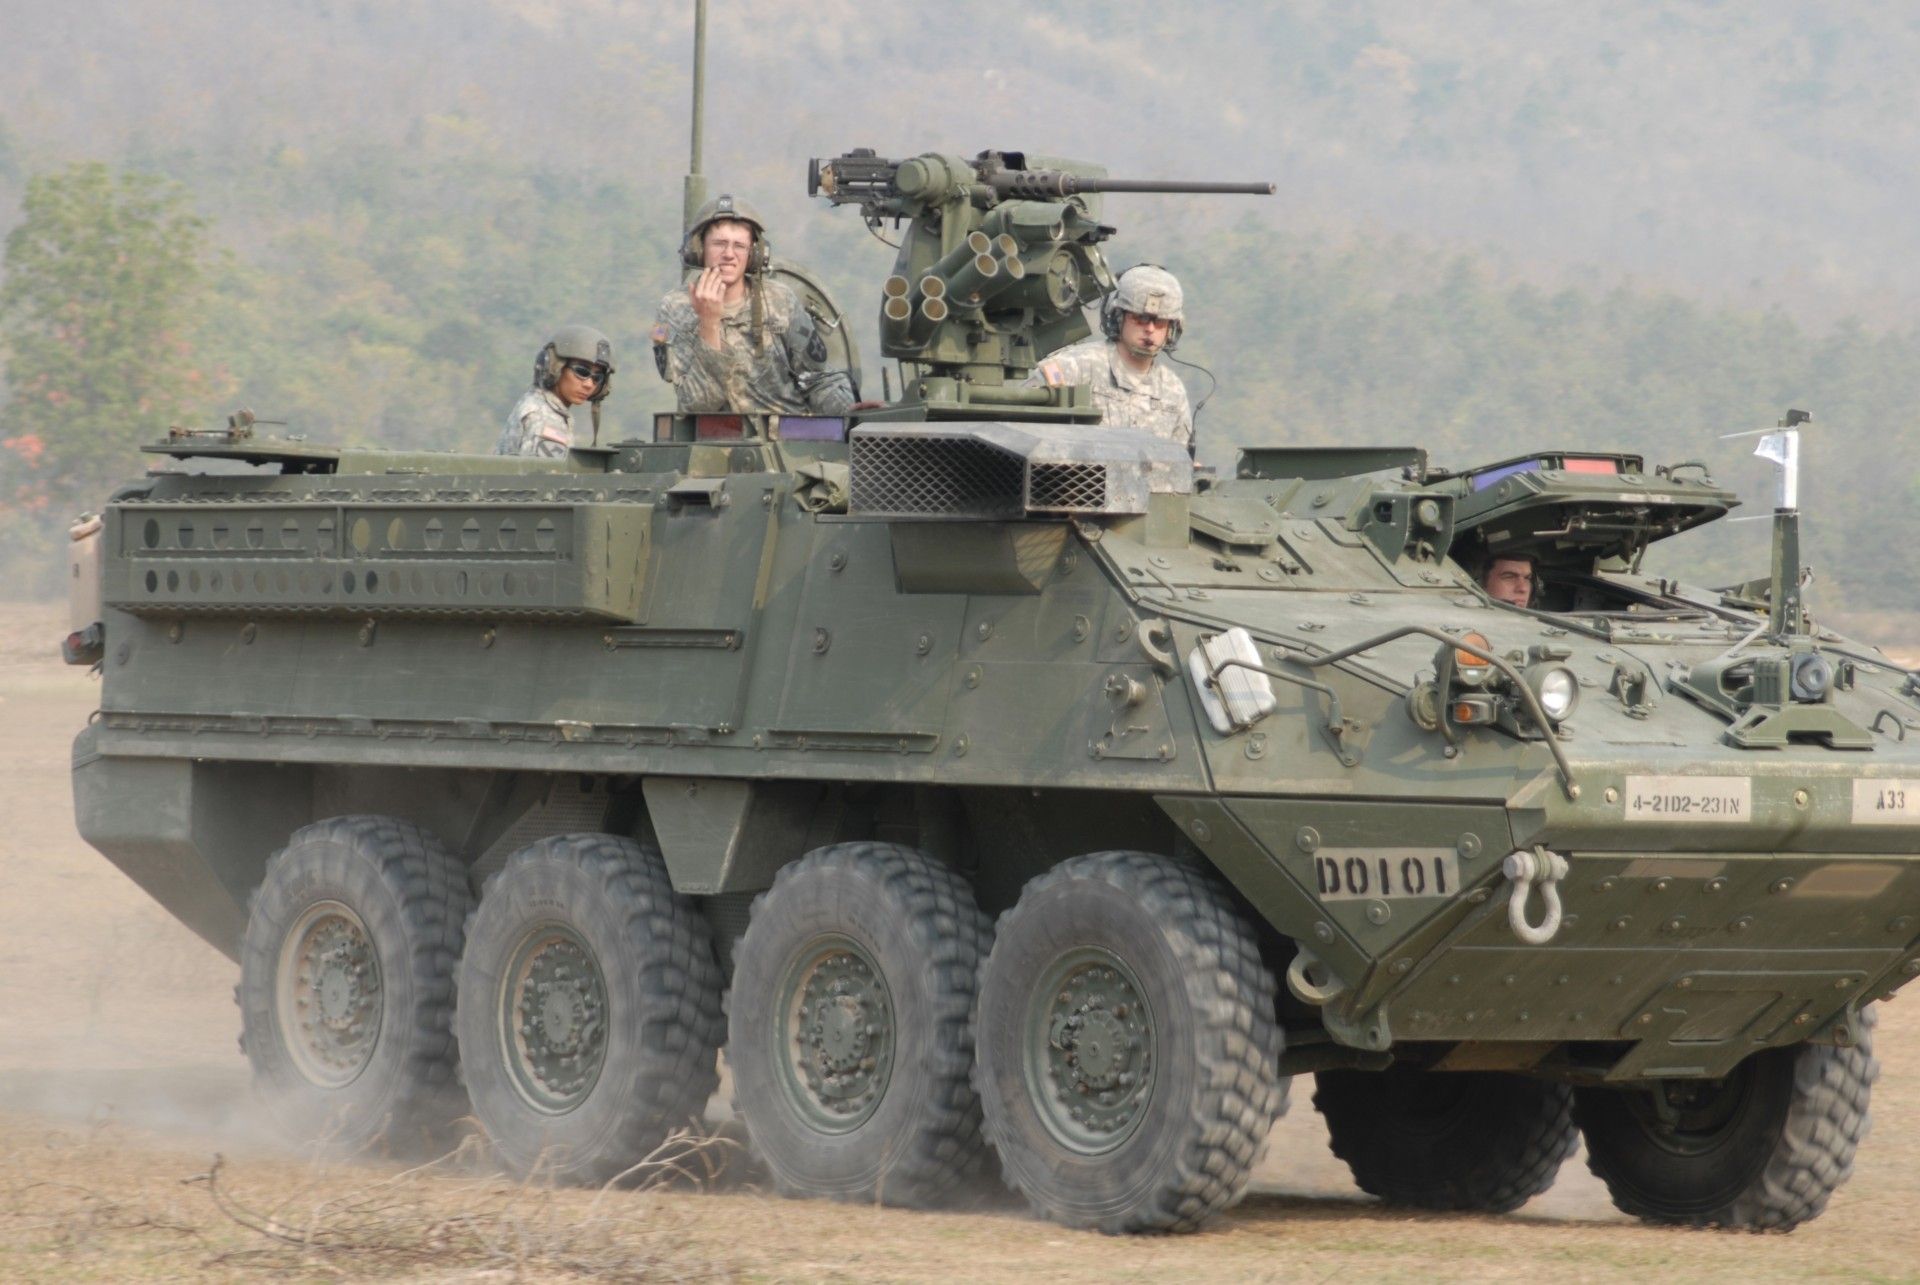 US Army zleciła przebudowę transporterów Stryker do standardu Stryker DVH, co pozwoli na zwiększenie poziomu ich ochrony wnętrza. Koszt konwersji istniejących pojazdów  jest znacznie niższy, niż zakupu nowych wozów. Fot. Sgt. 1st Class Jason Shepherd/US Army.